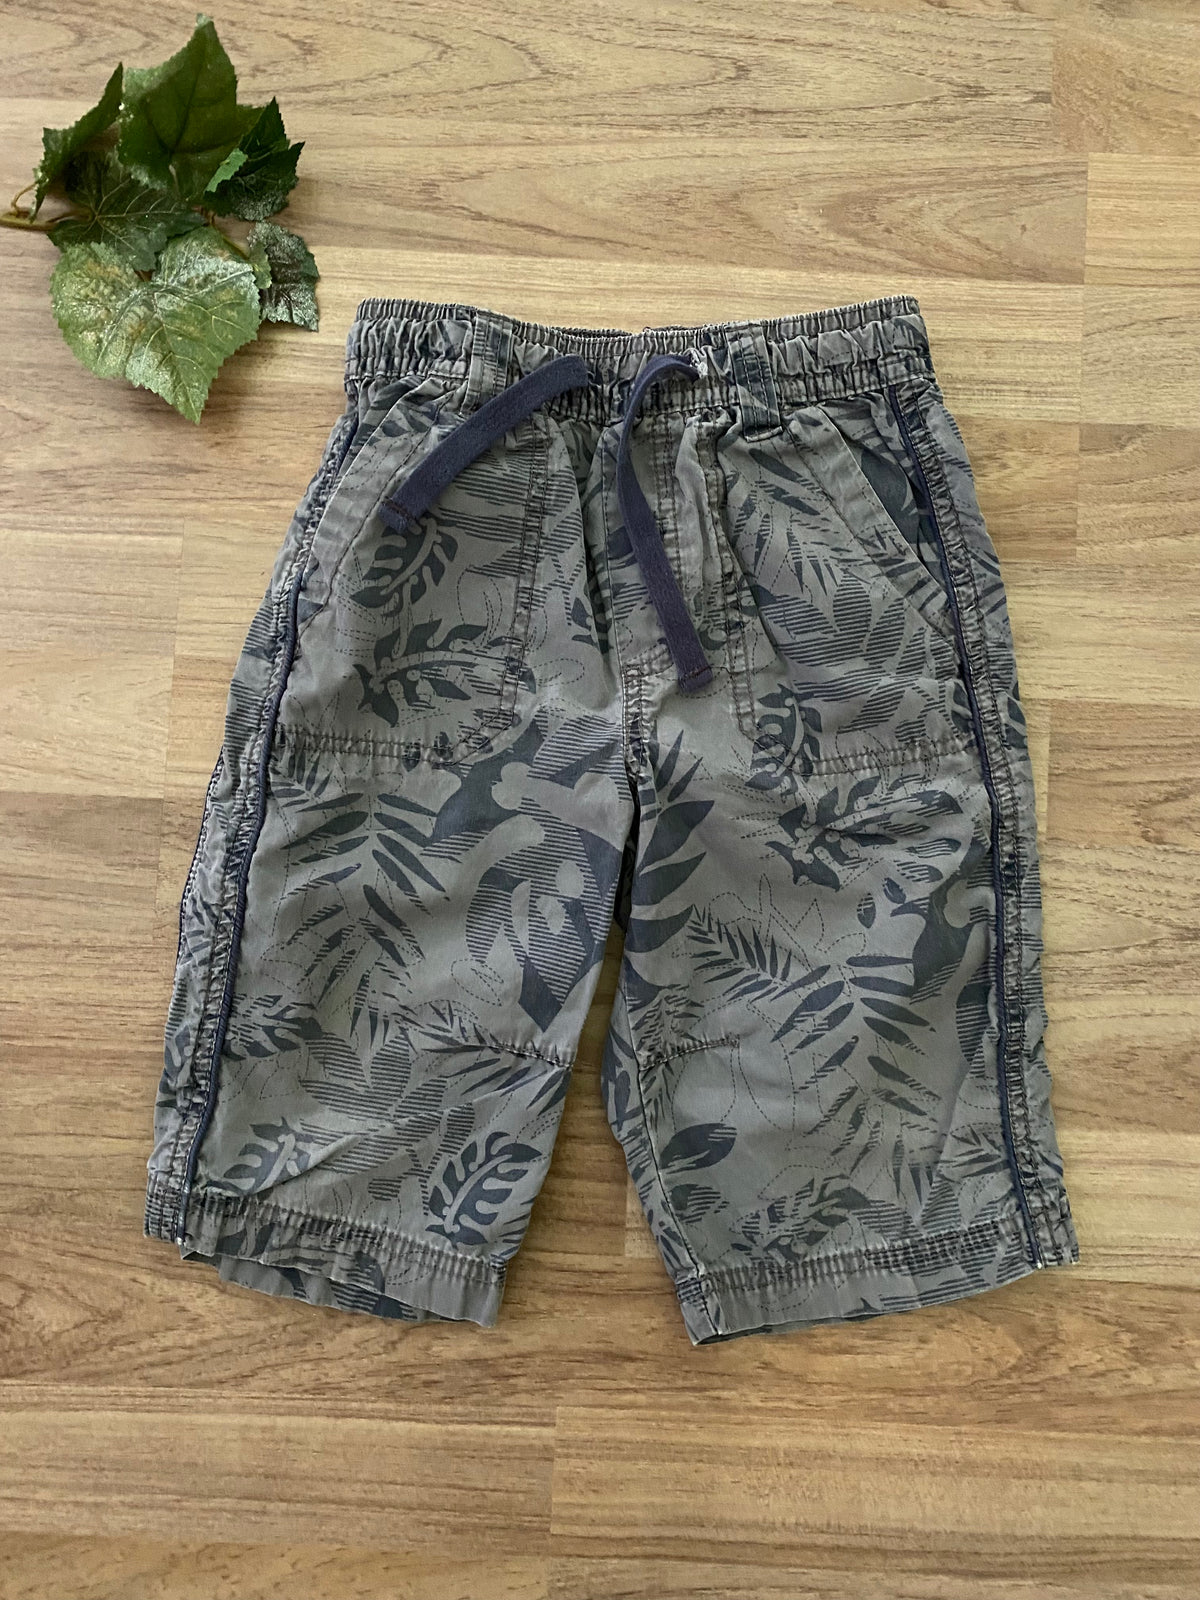 Shorts (Boys Size 6X)